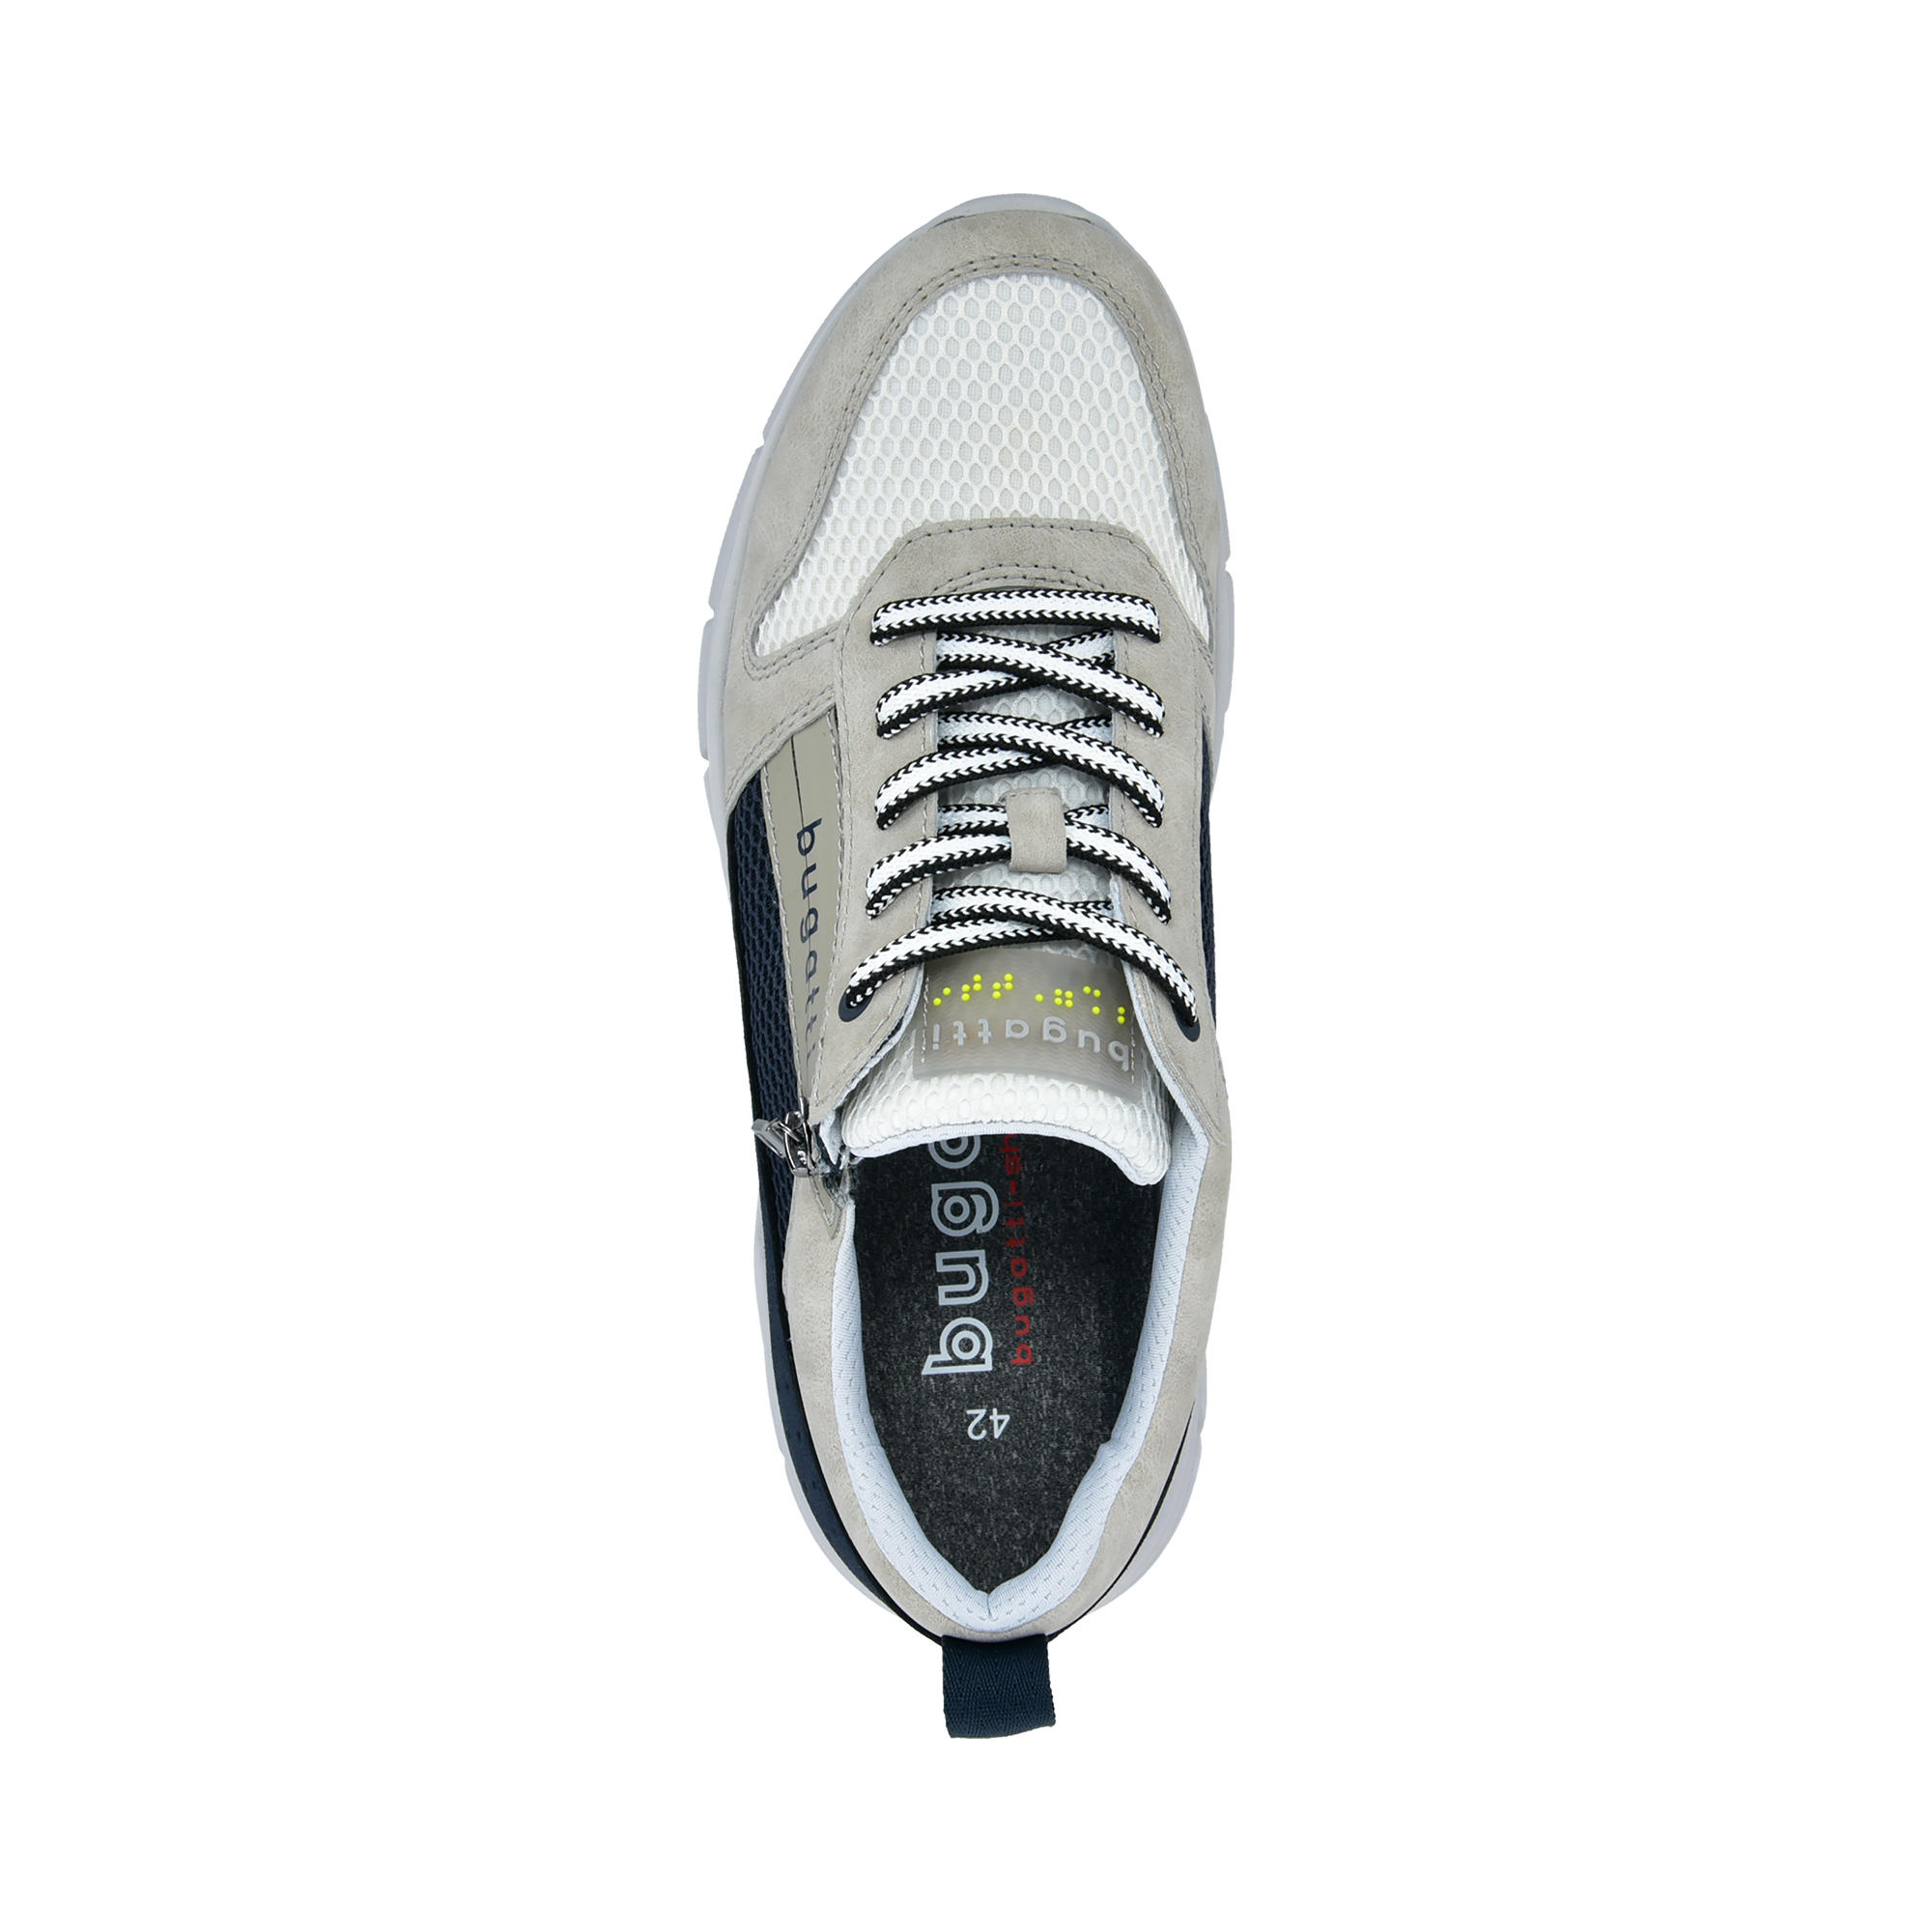 Sneaker light gray